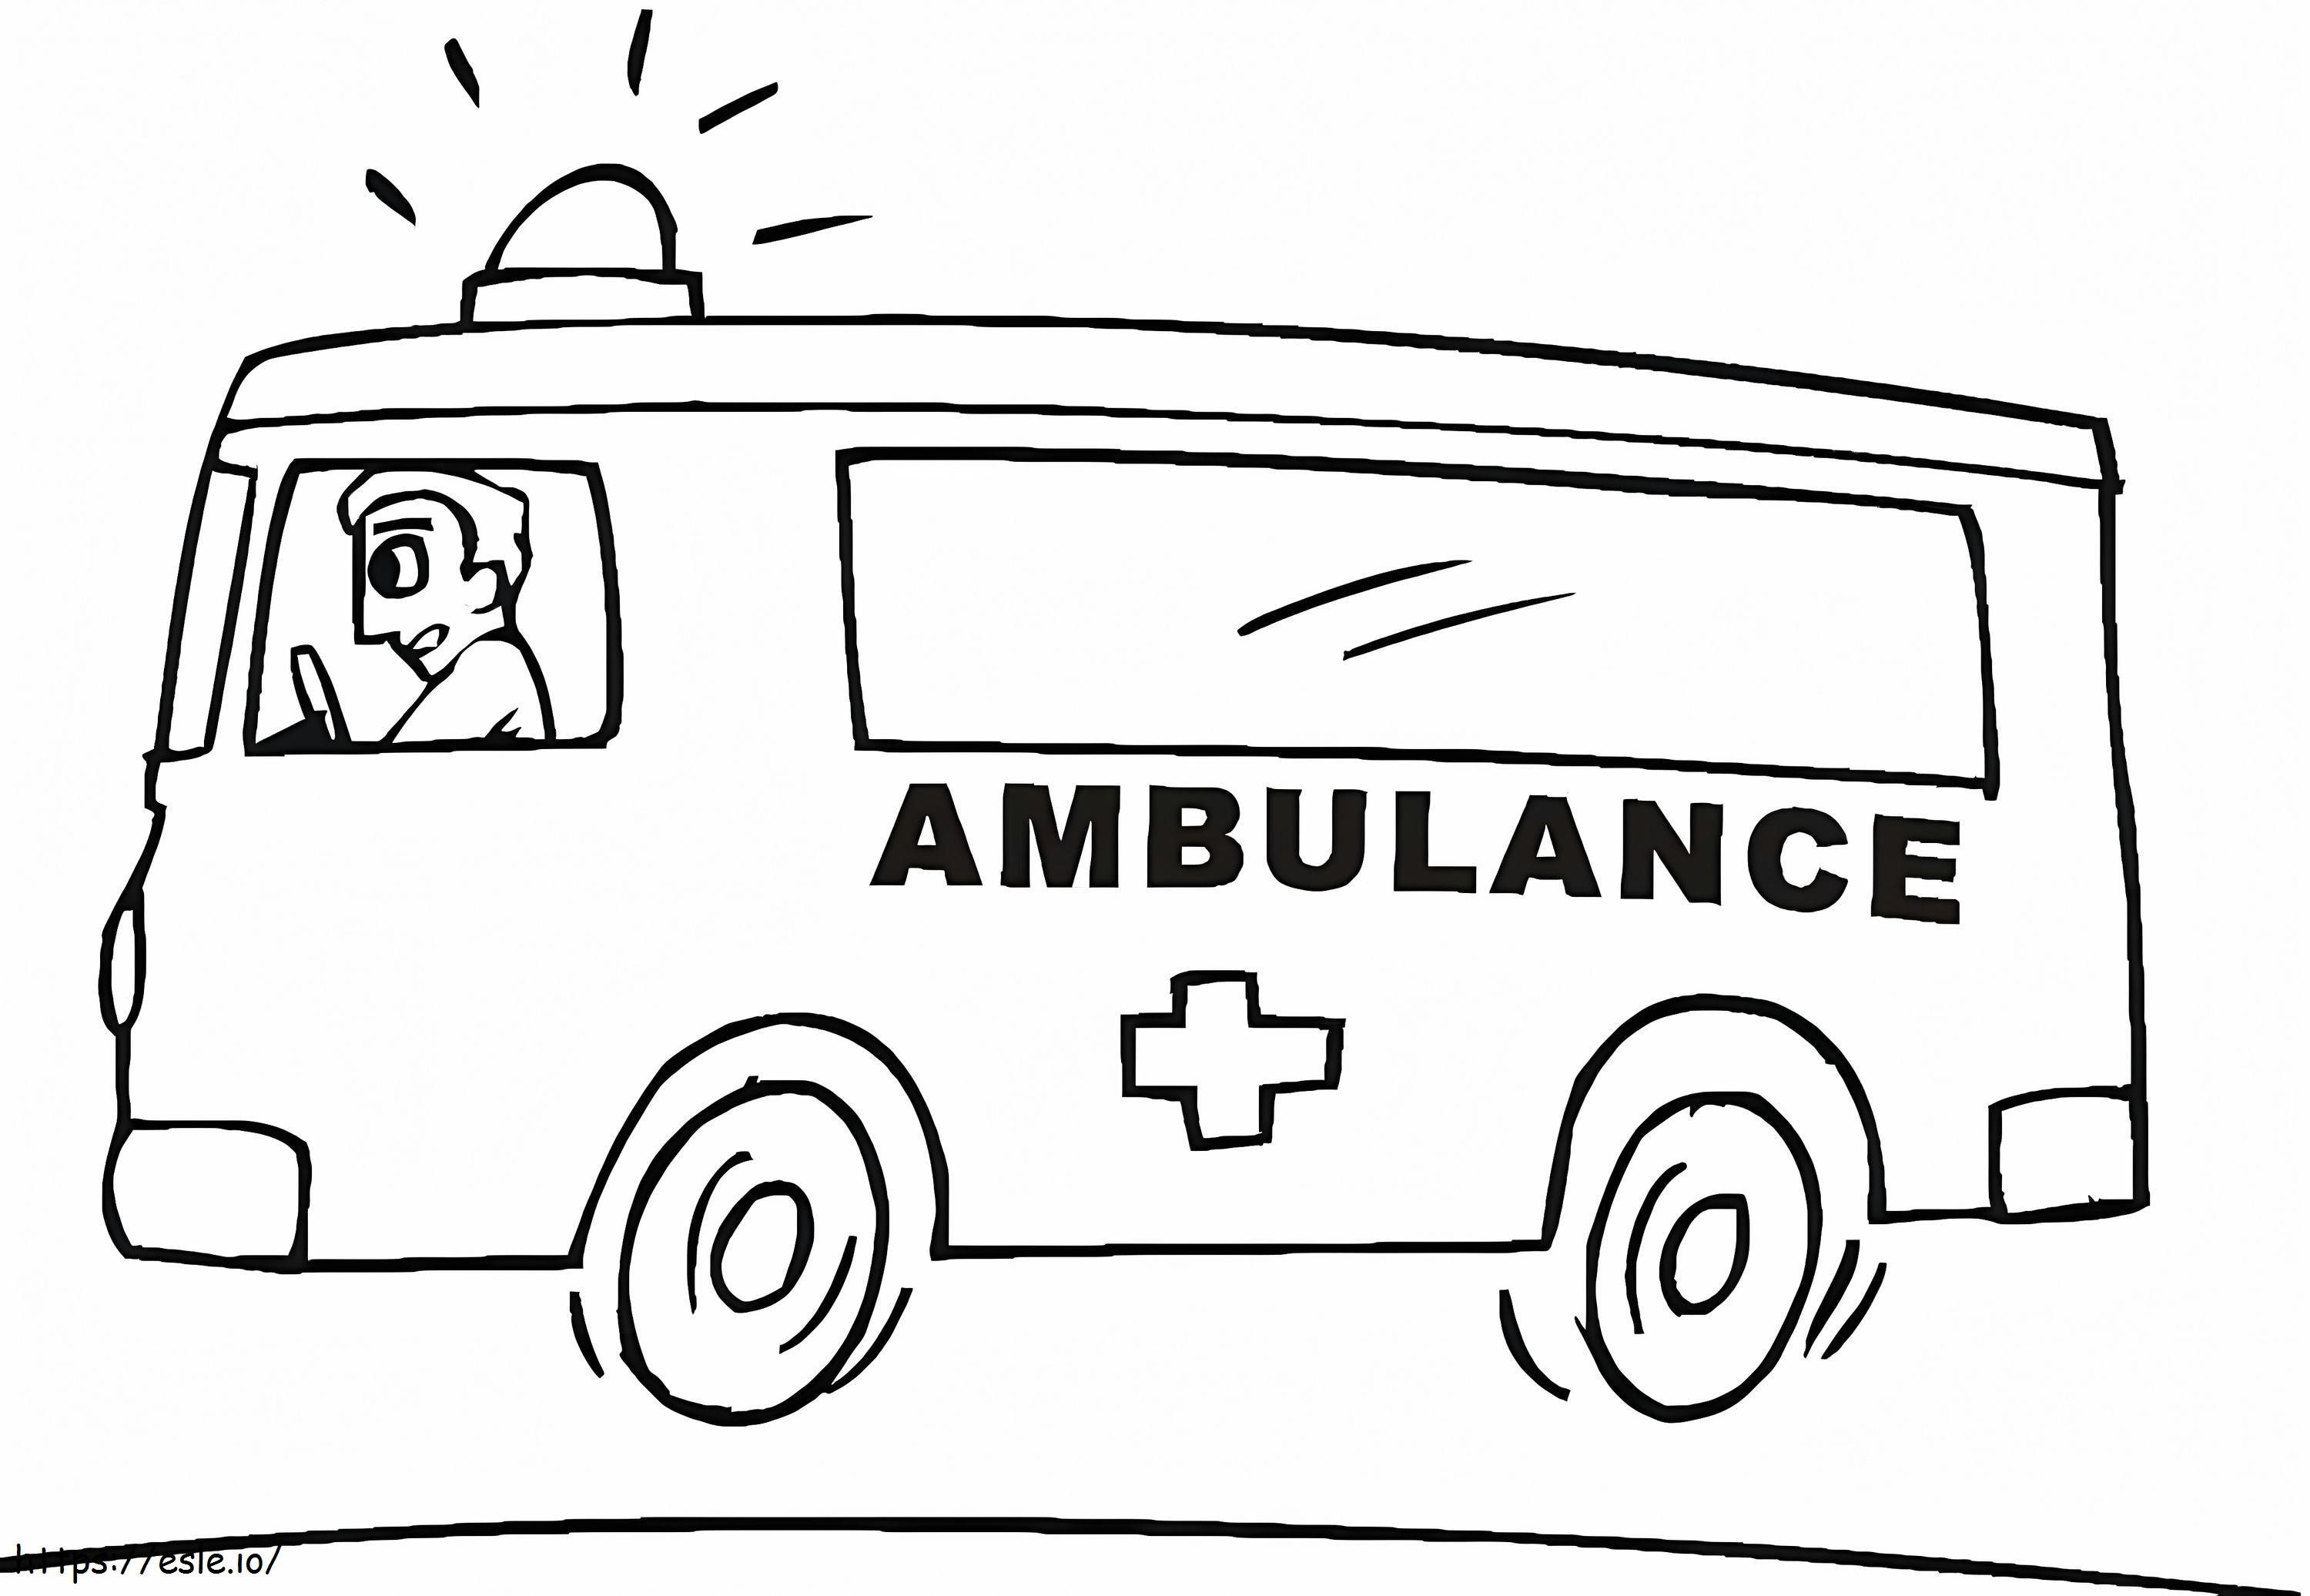 Ambulance 22 coloring page